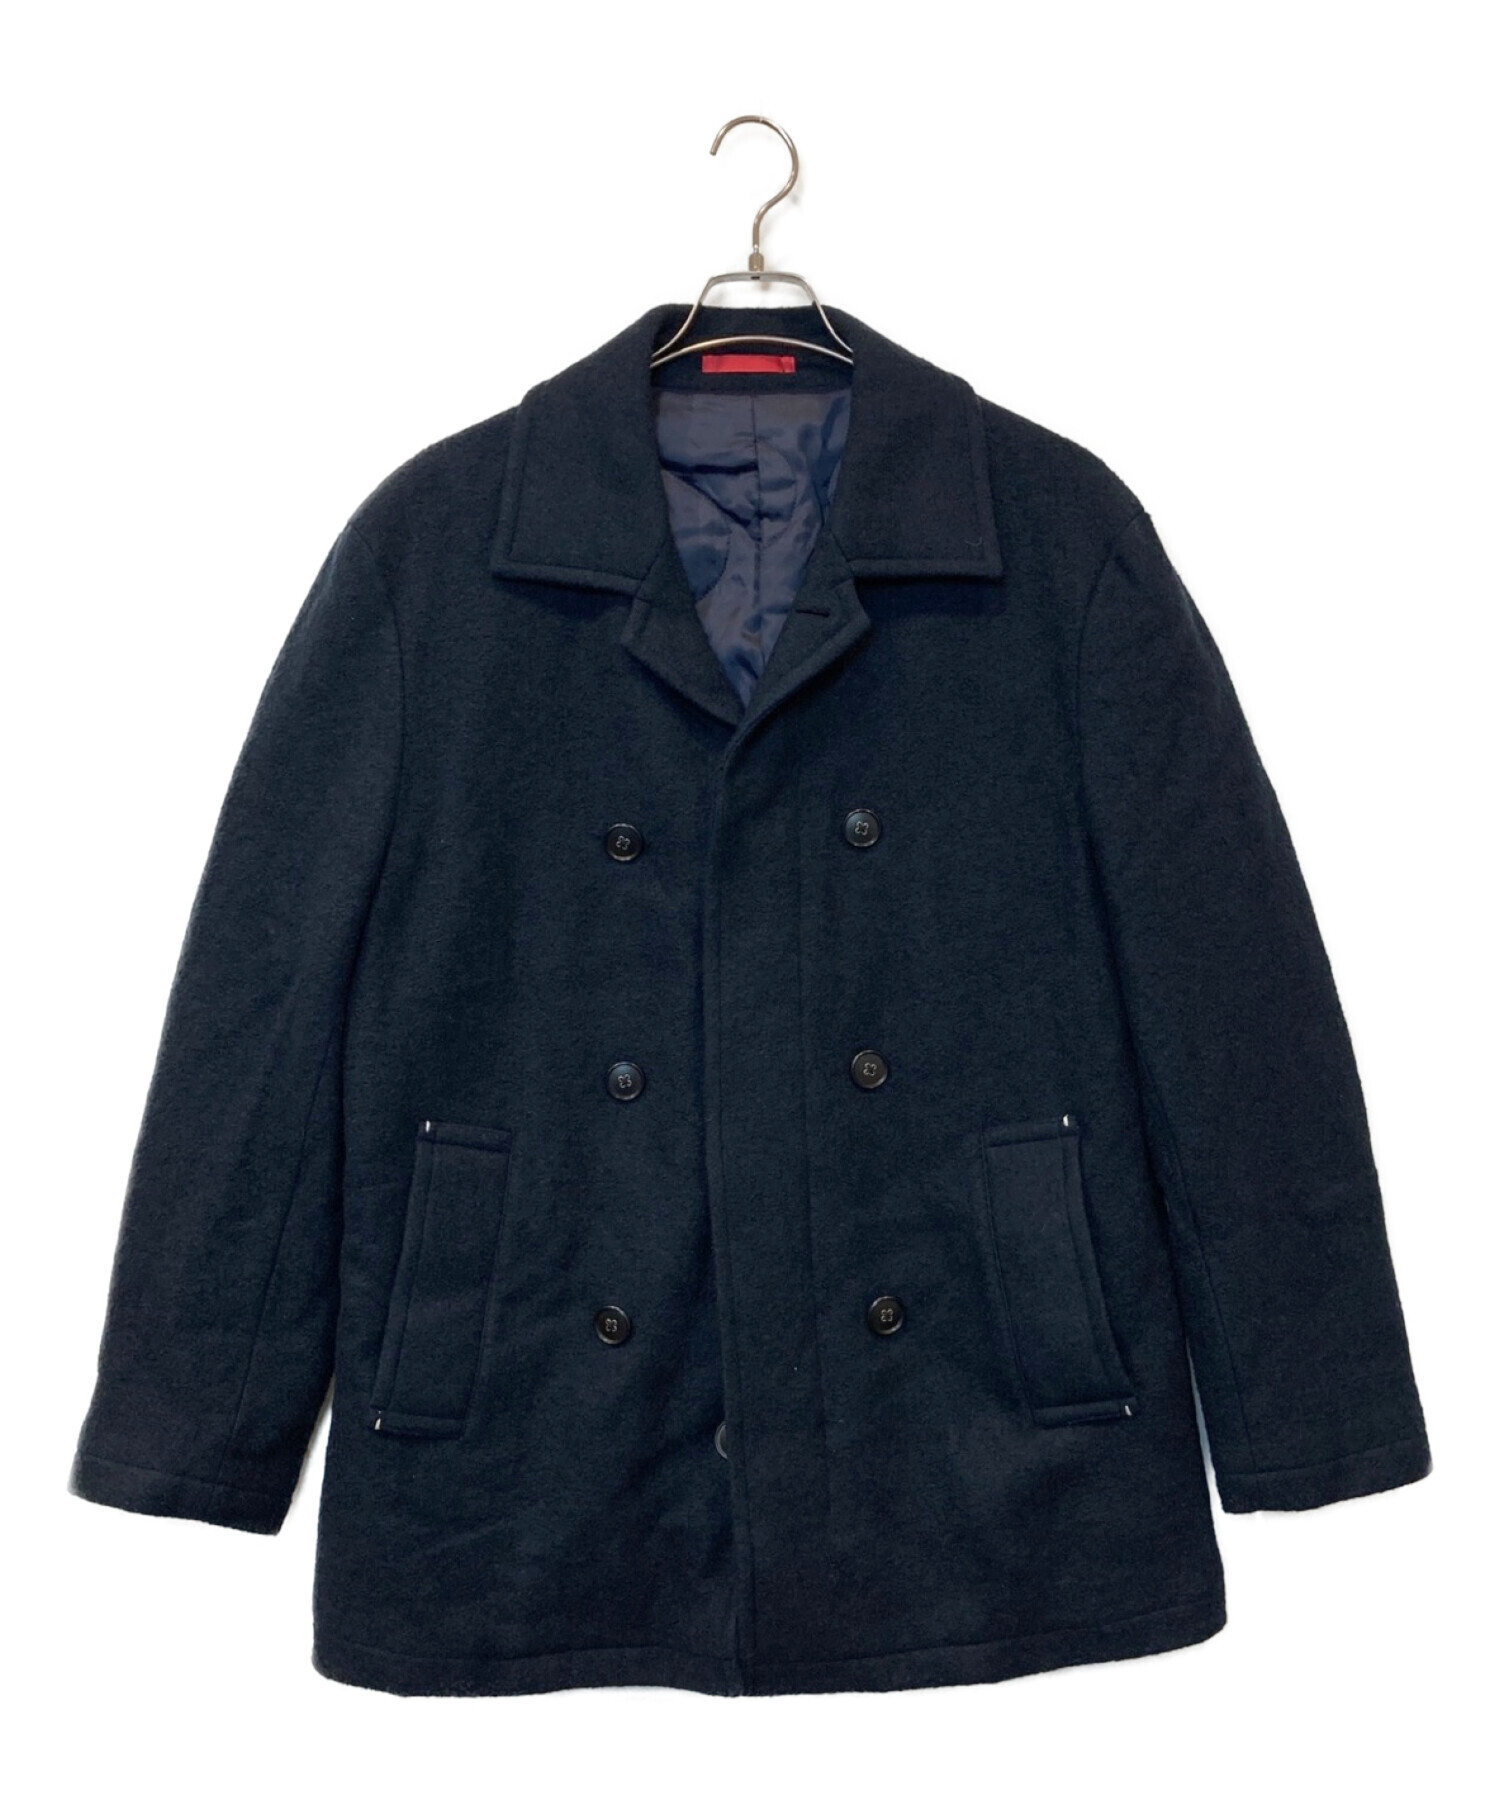 LANVIN on Blue ウールジャケットコートその為価格を加味しております